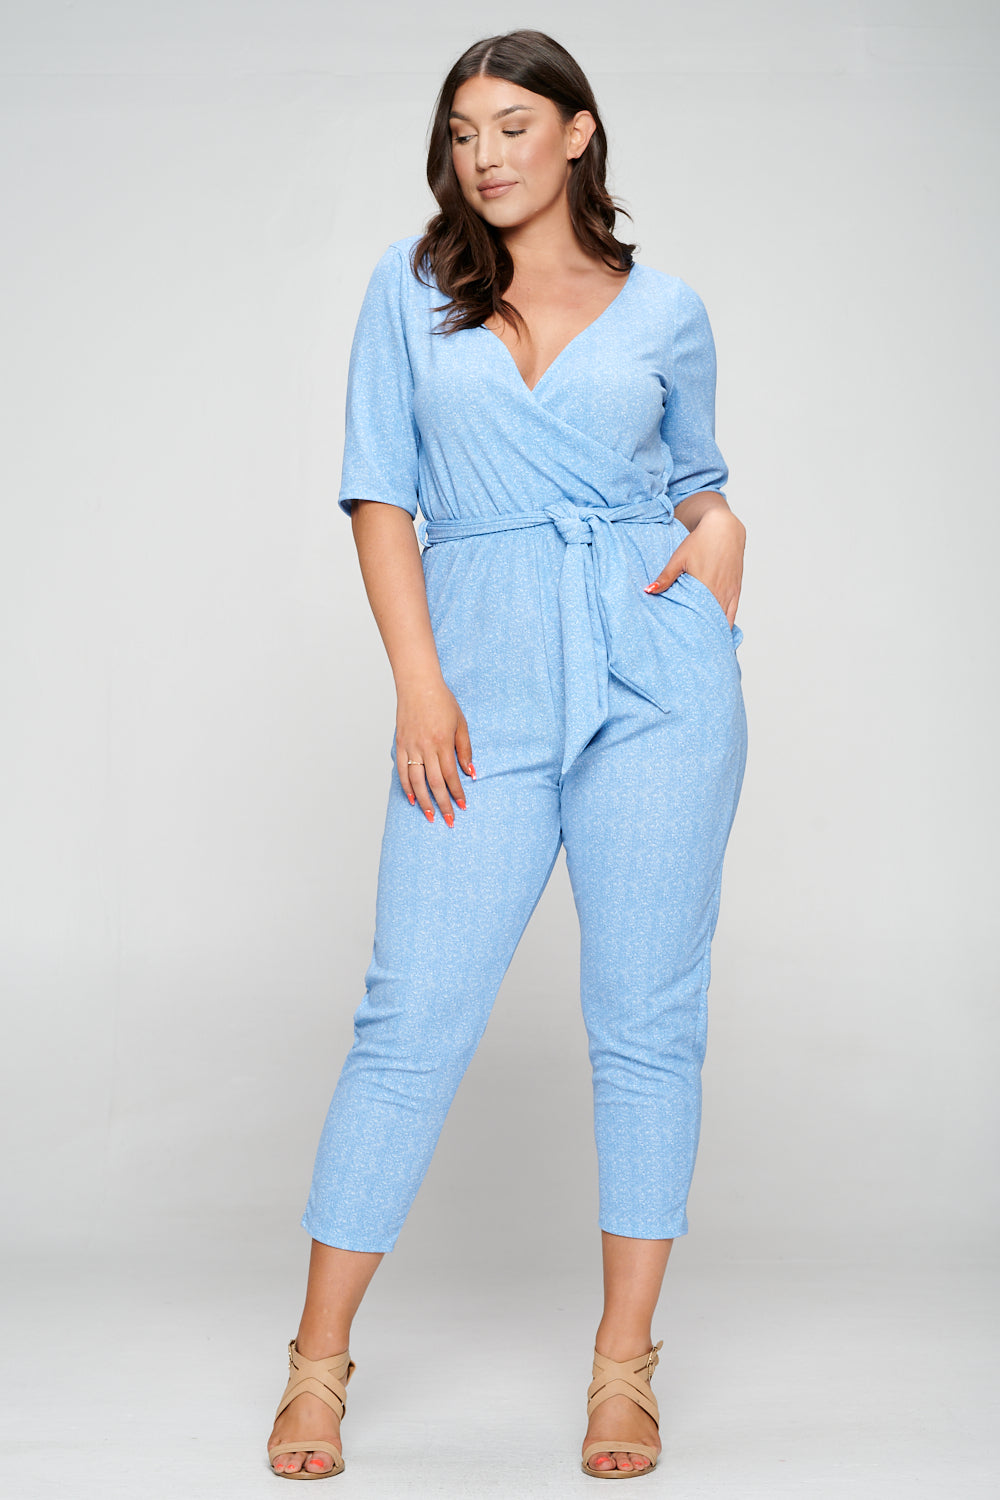 livd apparel plus size boutique contemporary wrap denim jumpsuit waist tie pockets in light blue